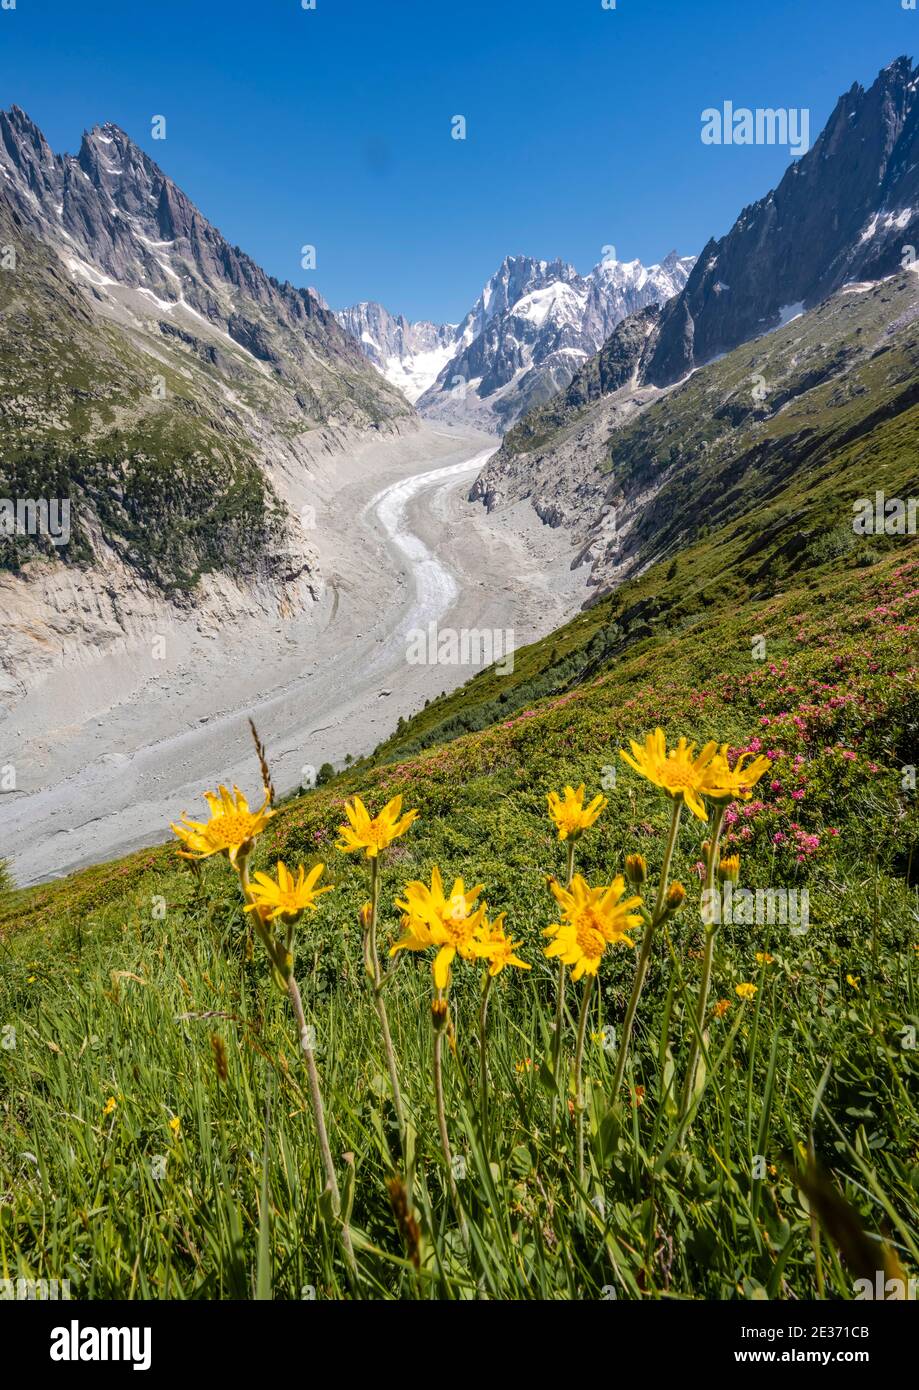 Fiori alpini gialli sulla montagna, lingua del ghiacciaio Mer de Glace, dietro Grandes Jorasses, massiccio del Monte Bianco, Chamonix, Francia Foto Stock